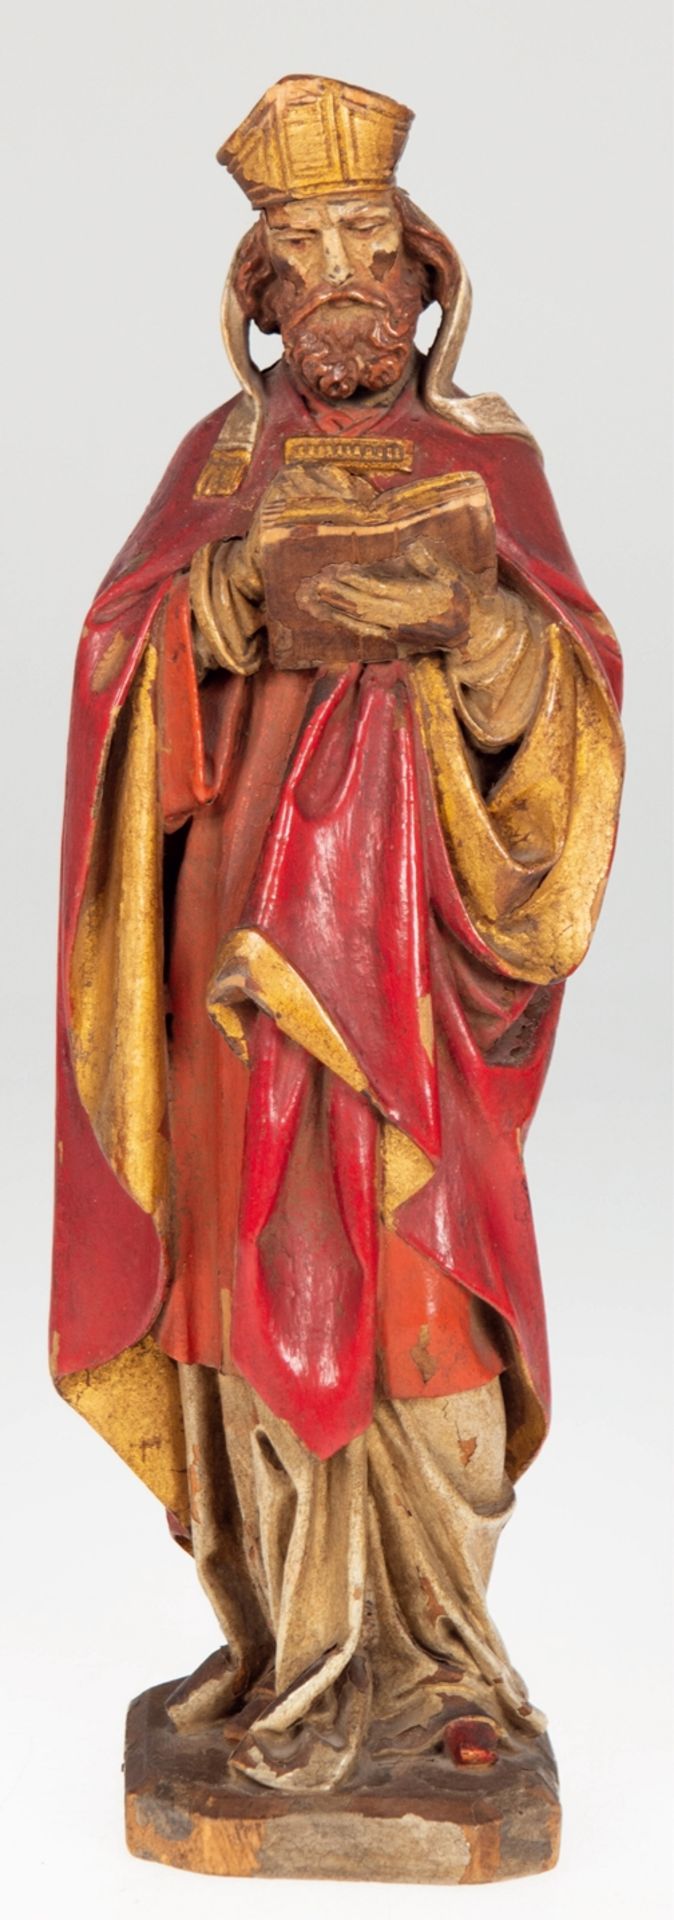 Heilgenfigur, 19. Jh., Holz, geschnitzt, alte Fassung mit Abplatzungen, H. 29 cm